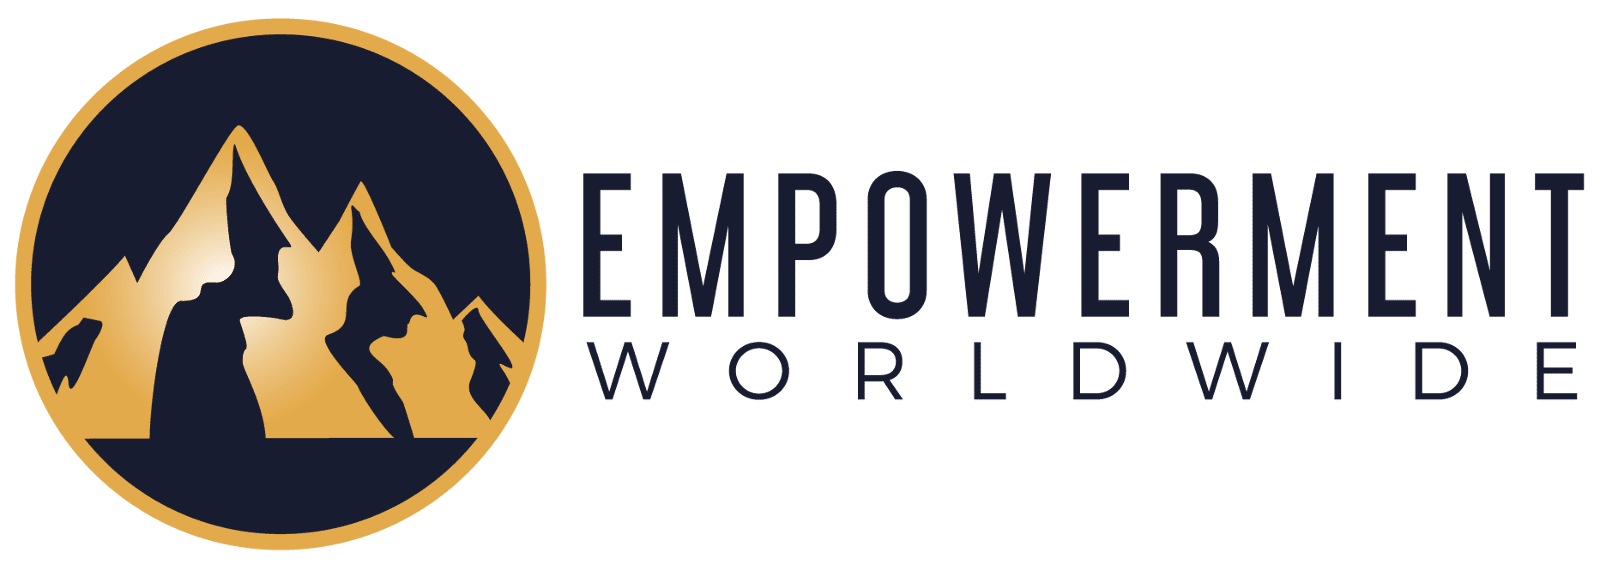 Empowerment Worldwide